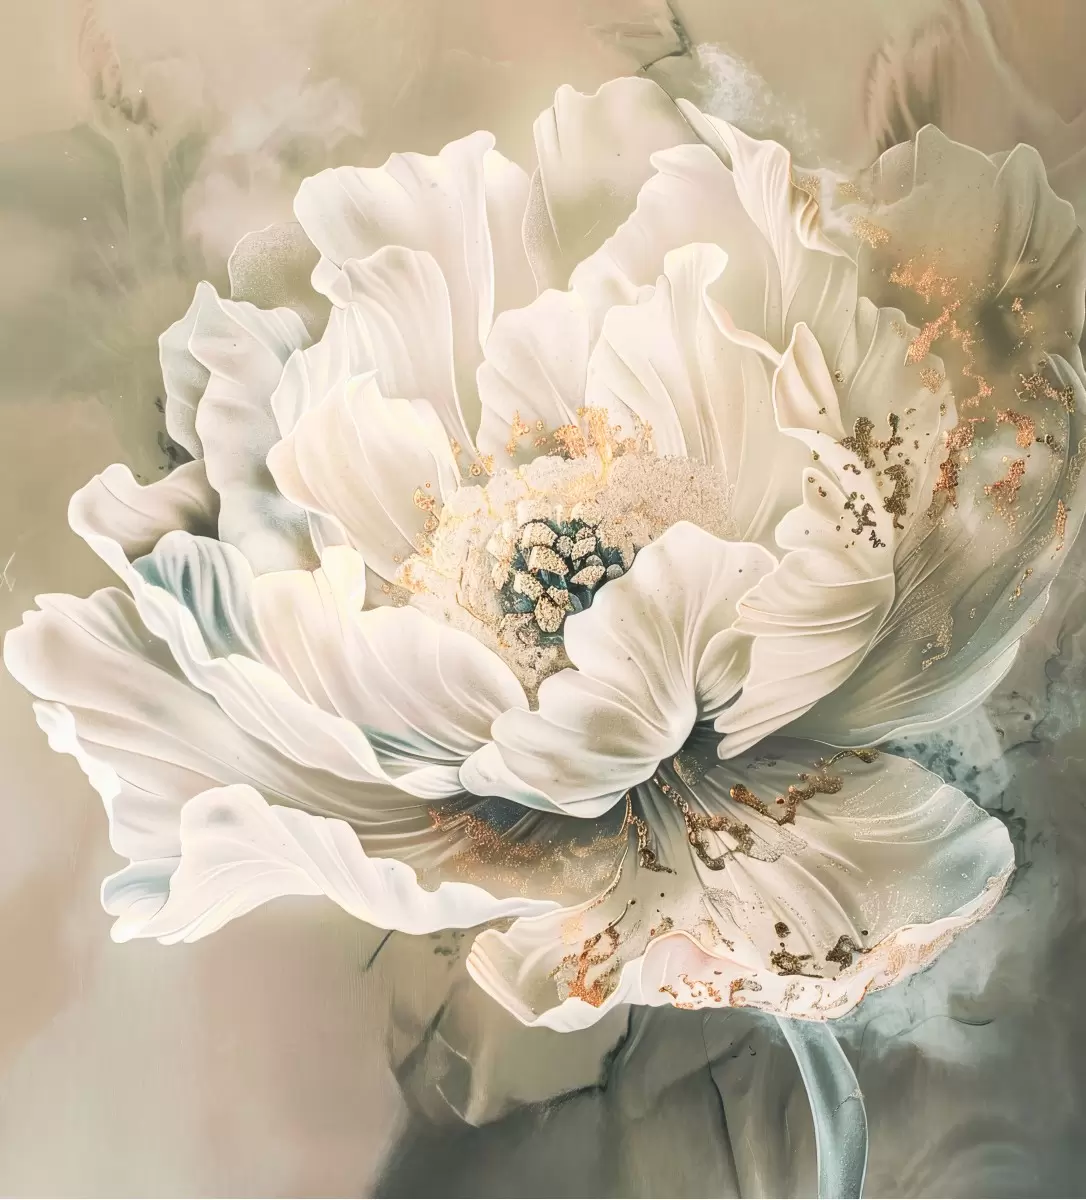 פרח לב הזהב - יניב גרינברג - תמונות רומנטיות לחדר שינה תמונות של בינה מלאכותית  - מק''ט: 468302